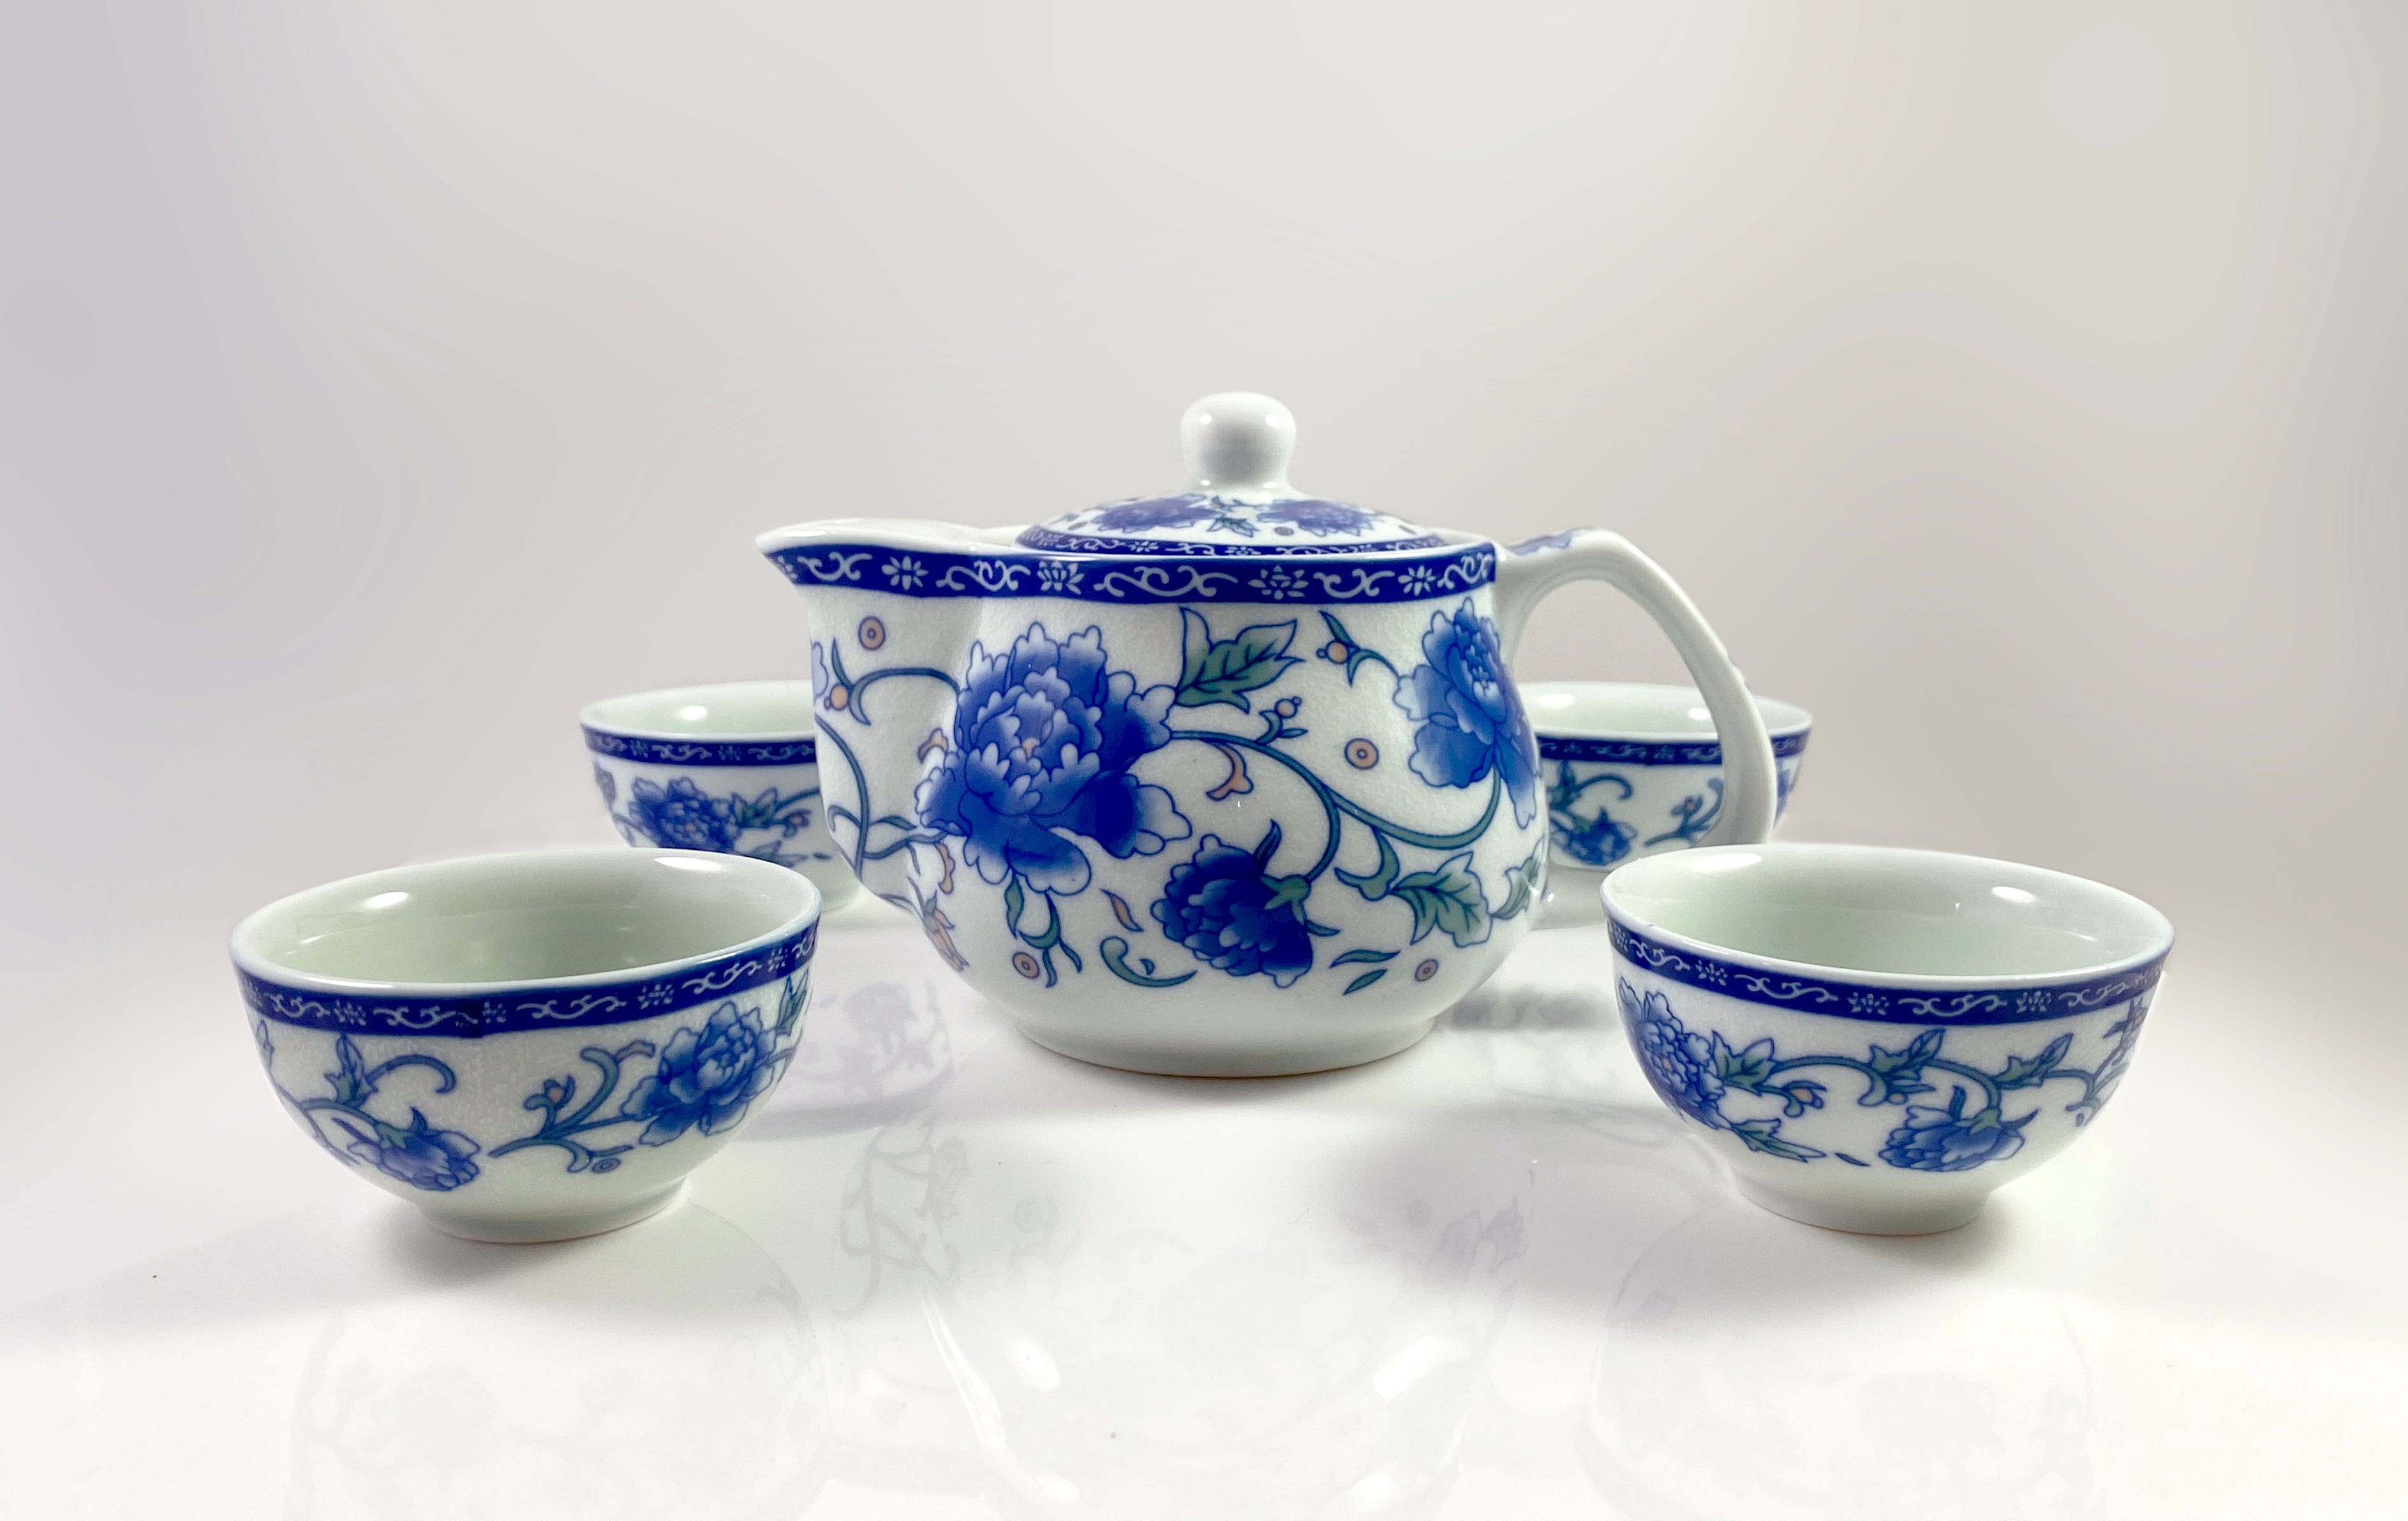 Gong Fu Teapot Starter Kit